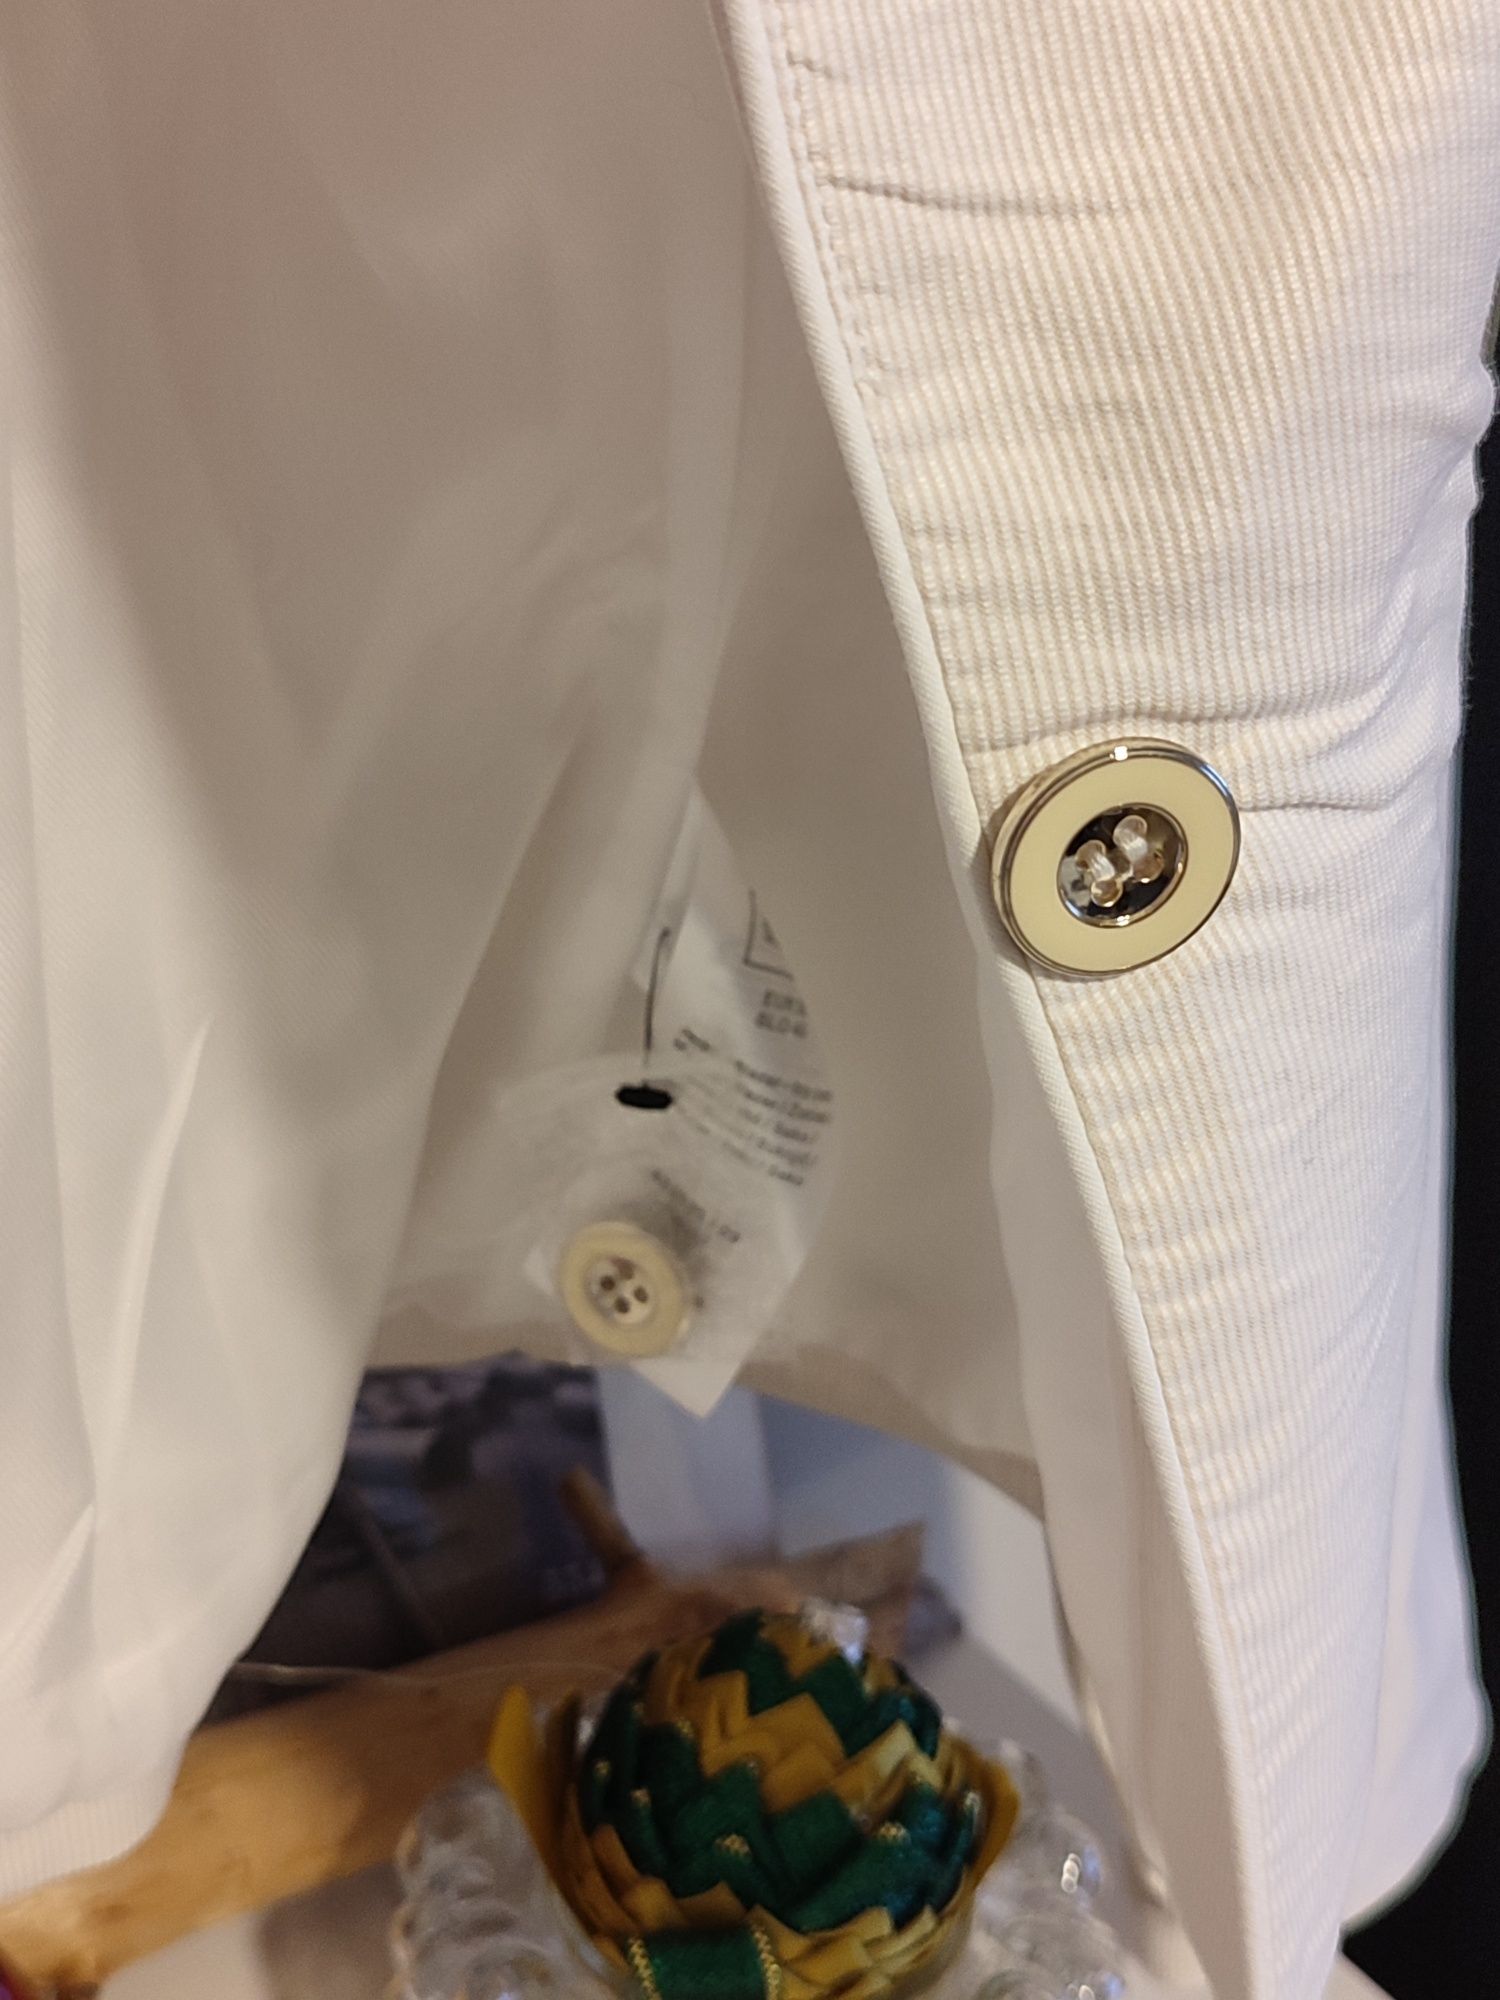 Żakiet Orsay nowy biały złote guziki.
97% bawełna